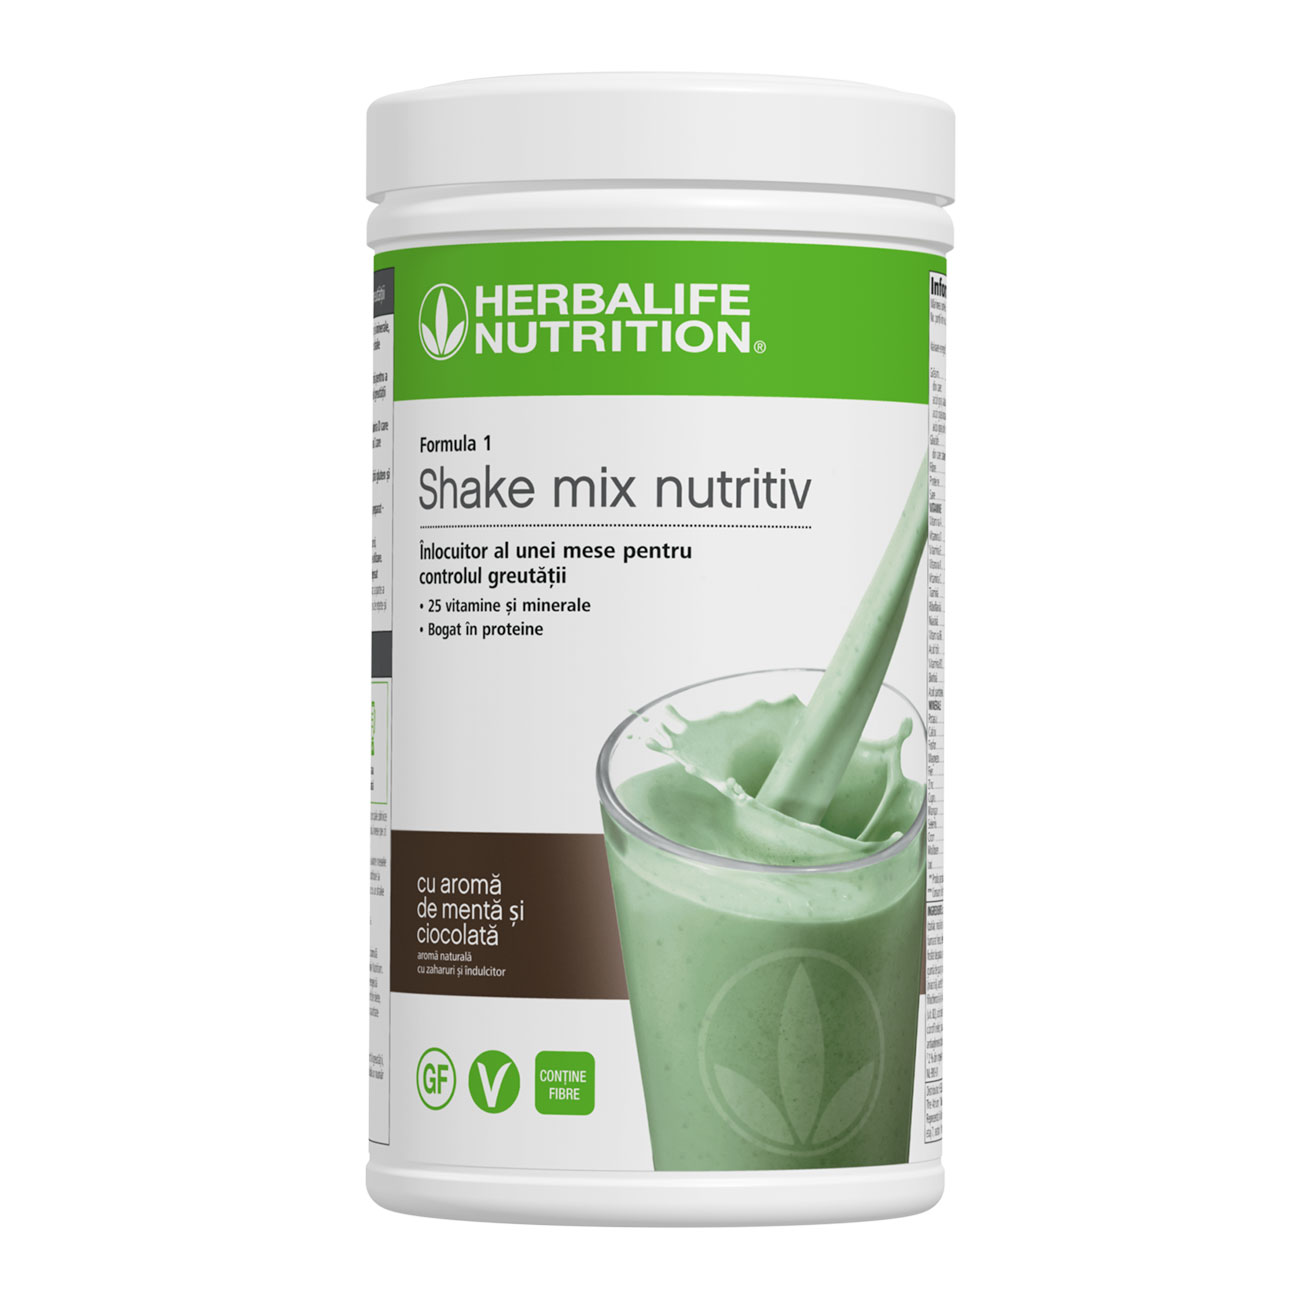 Formula 1 Shake mix nutritiv Mentă & Ciocolată product shot